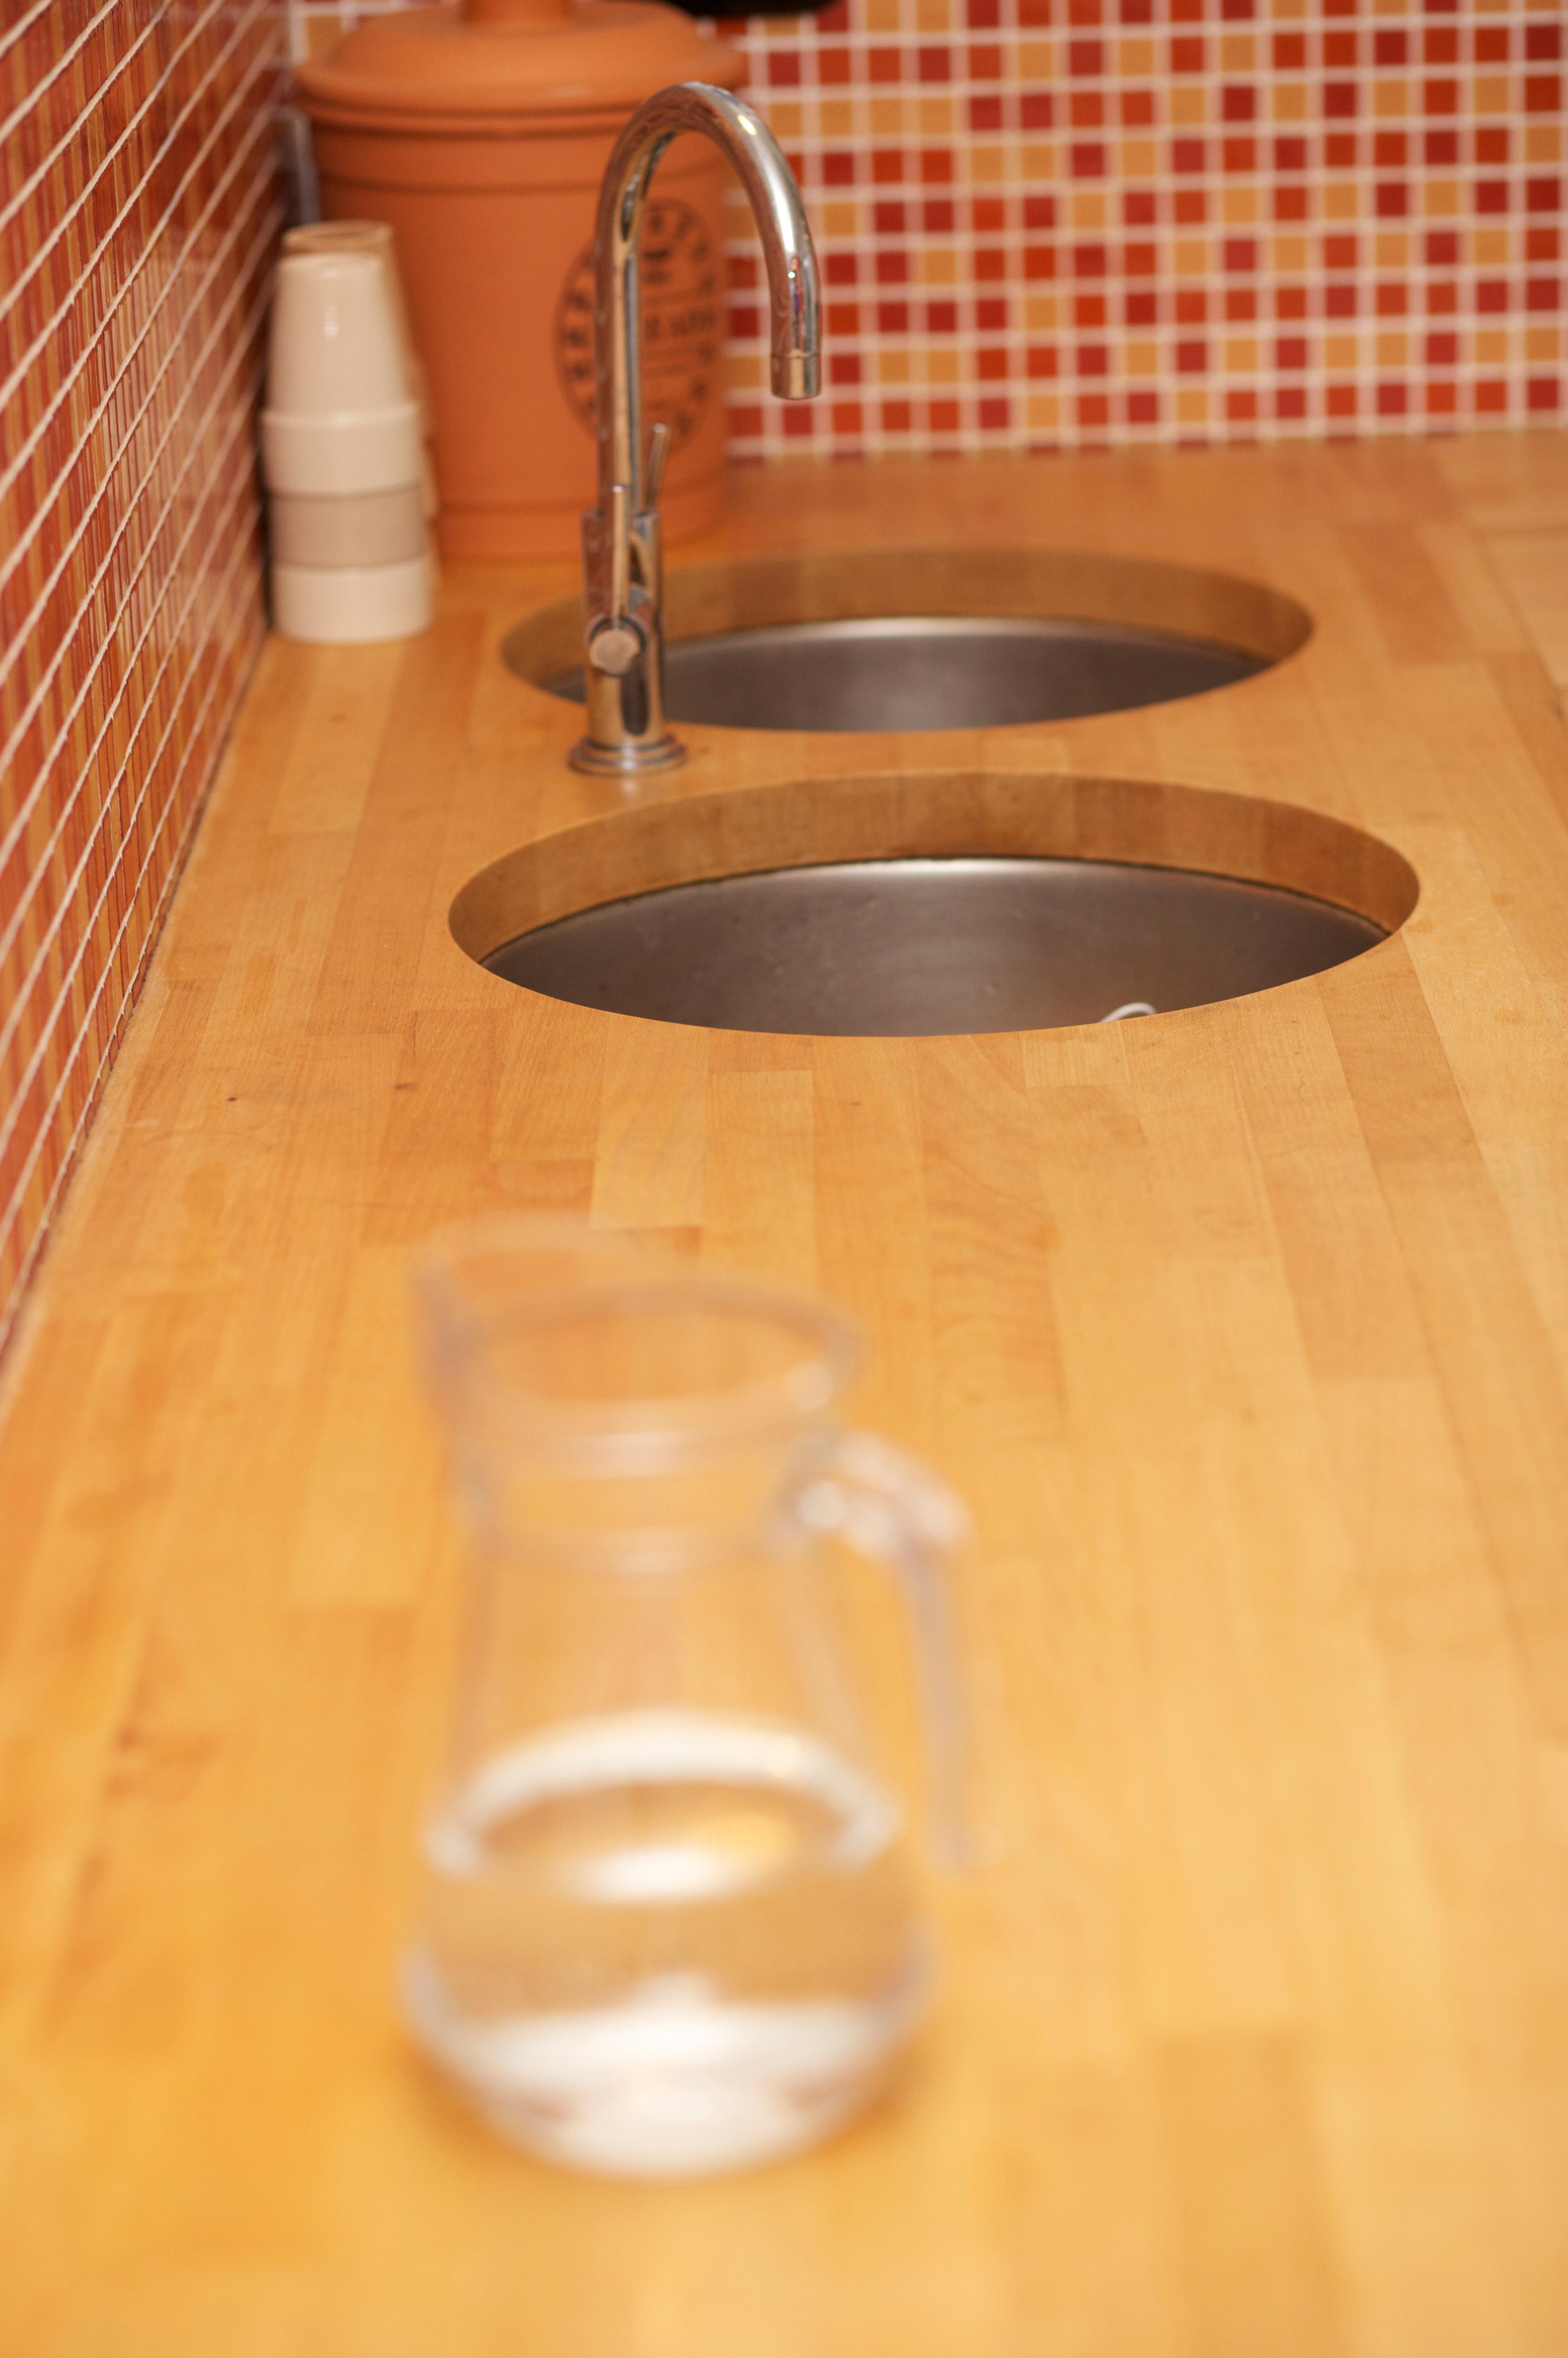 Eingelassene Küchenspüle #küche #arbeitsplatte #buntefliesen ©Sebastian Schupfner